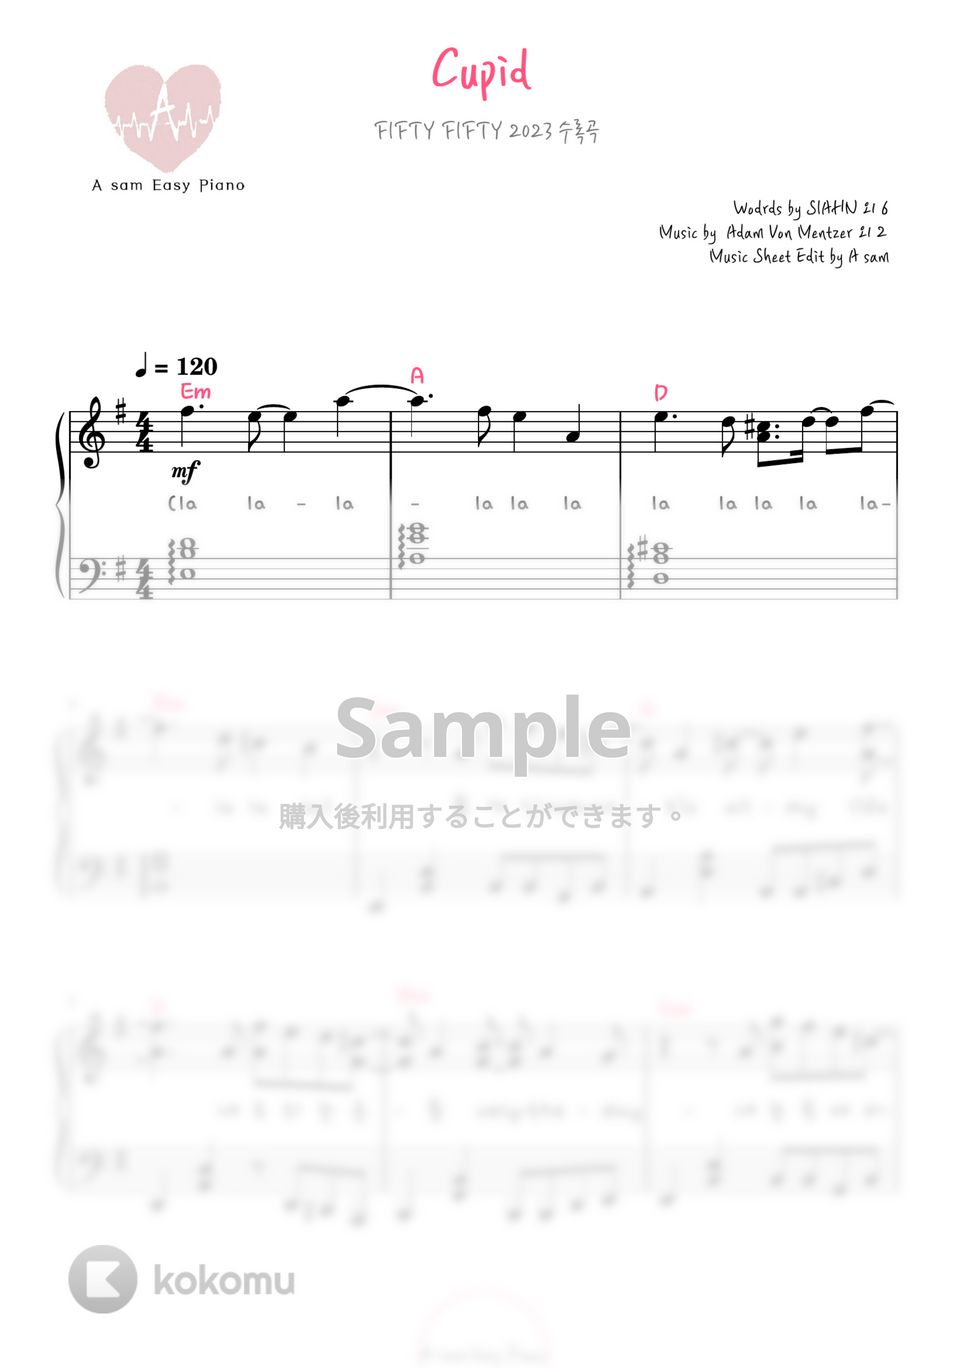 FIFTY FIFTY - Cupid (ピアノ両手 / 中級 / 韓国語歌詞付き) by A-sam